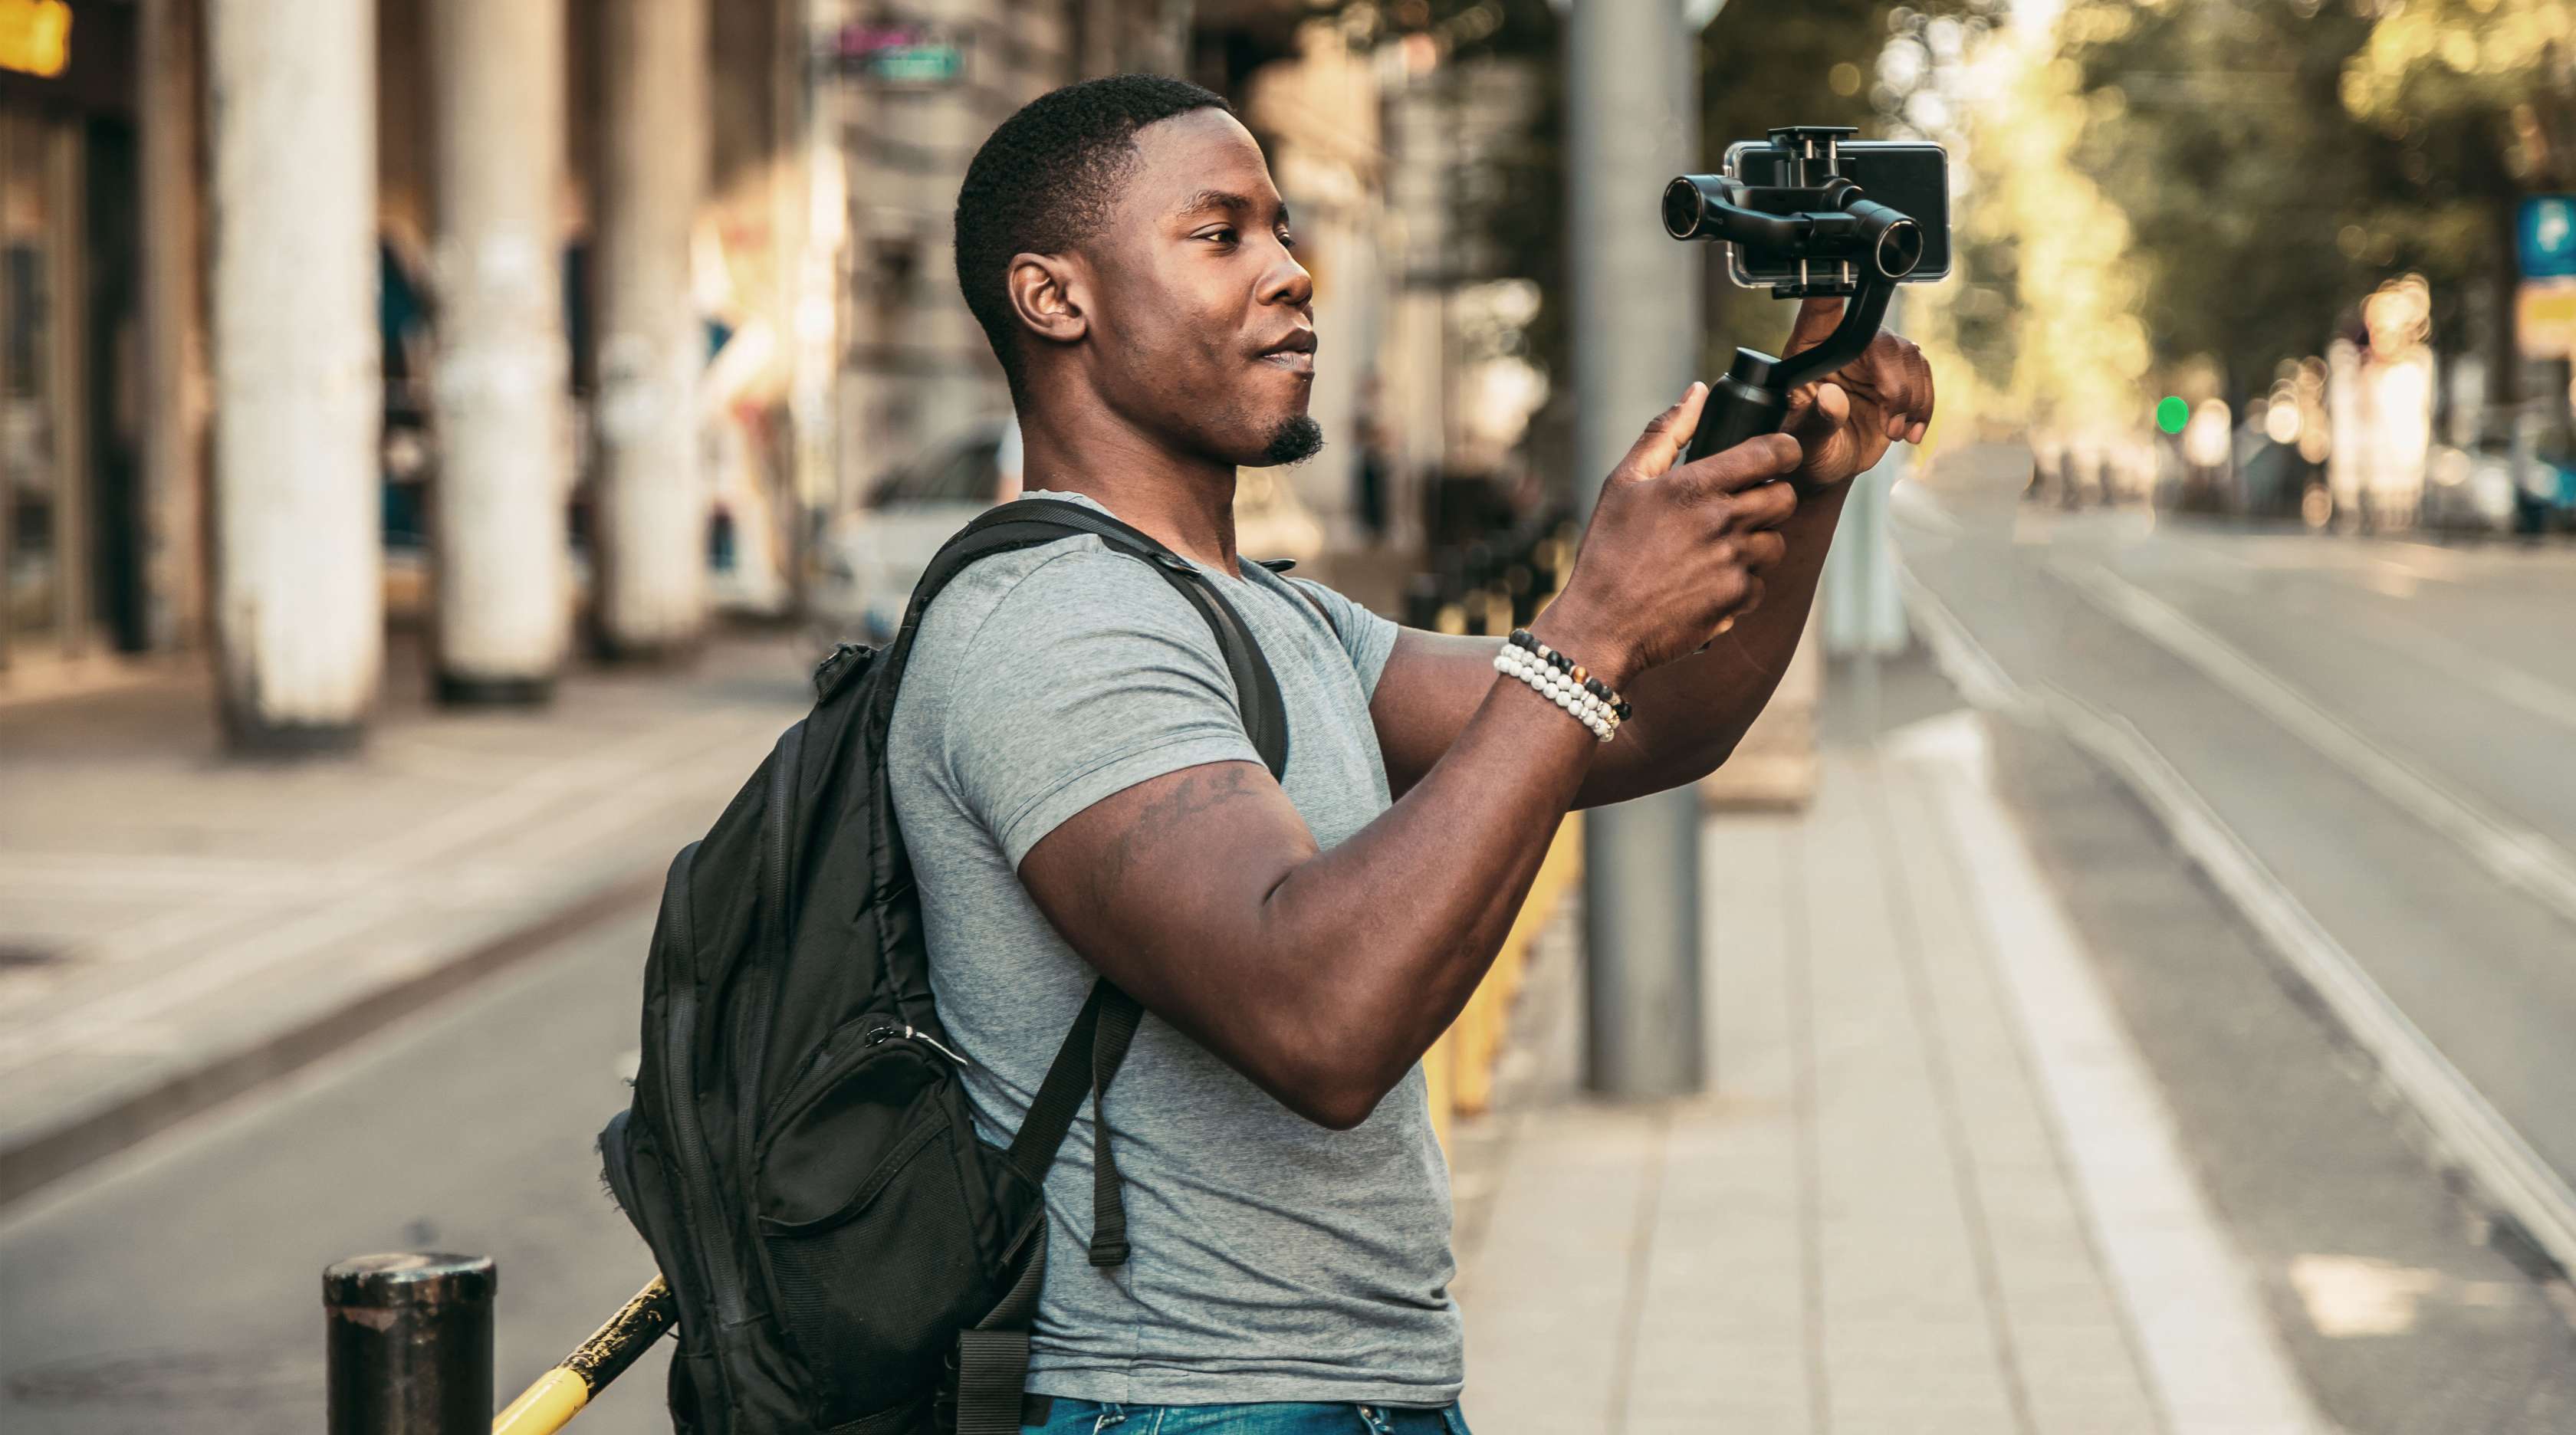 Man sieht einen jungen Mann in der Stadt, der sein Mobiltelefon auf einem Stativ trägt und offenbar sich selbst filmt.